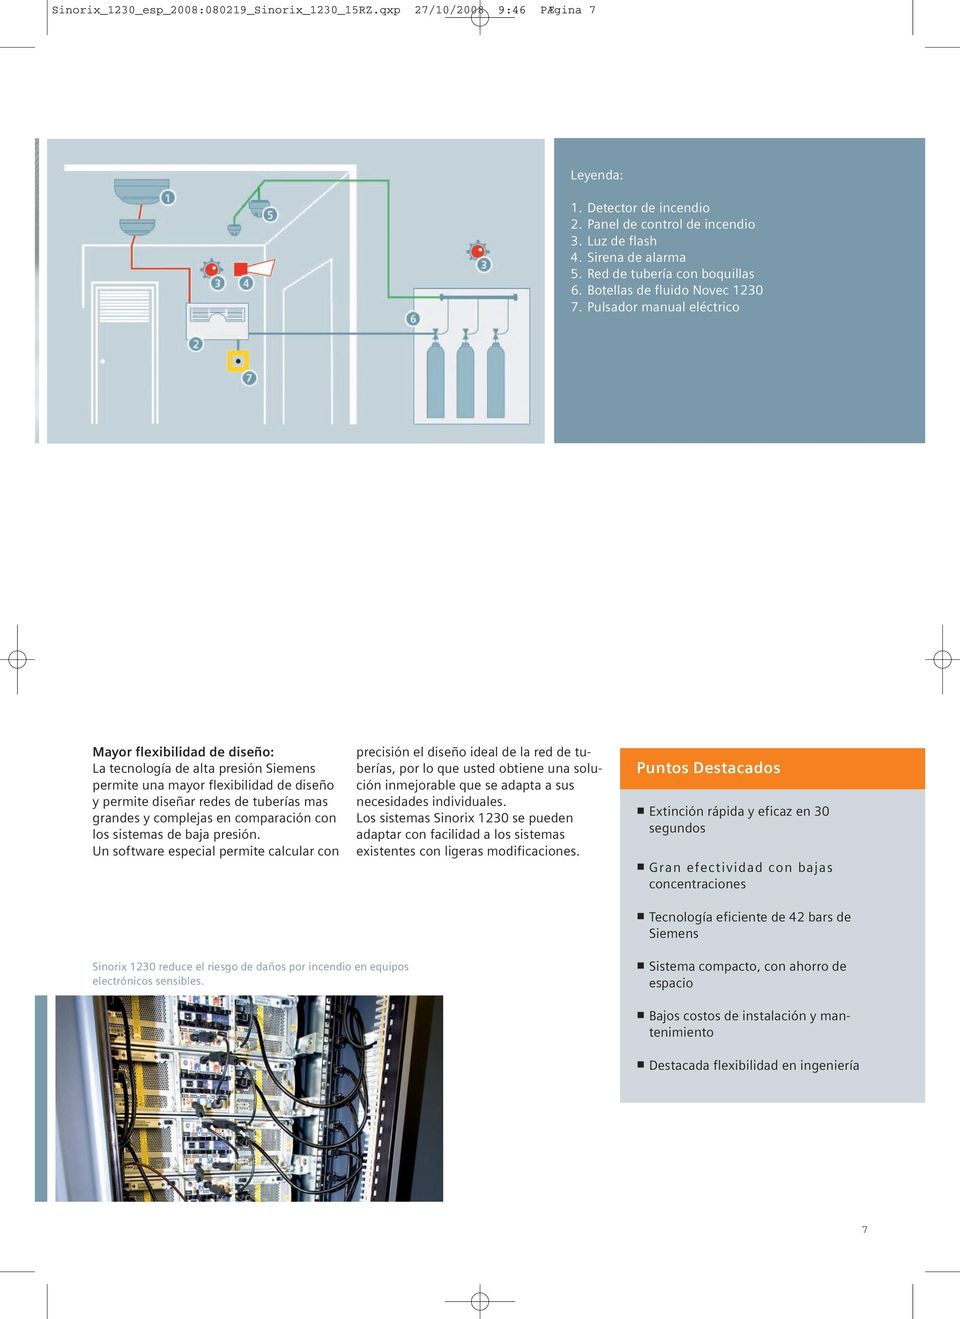 Pulsador manual eléctrico Mayor flexibilidad de diseño: La tecnología de alta presión Siemens permite una mayor flexibilidad de diseño y permite diseñar redes de tuberías mas grandes y complejas en